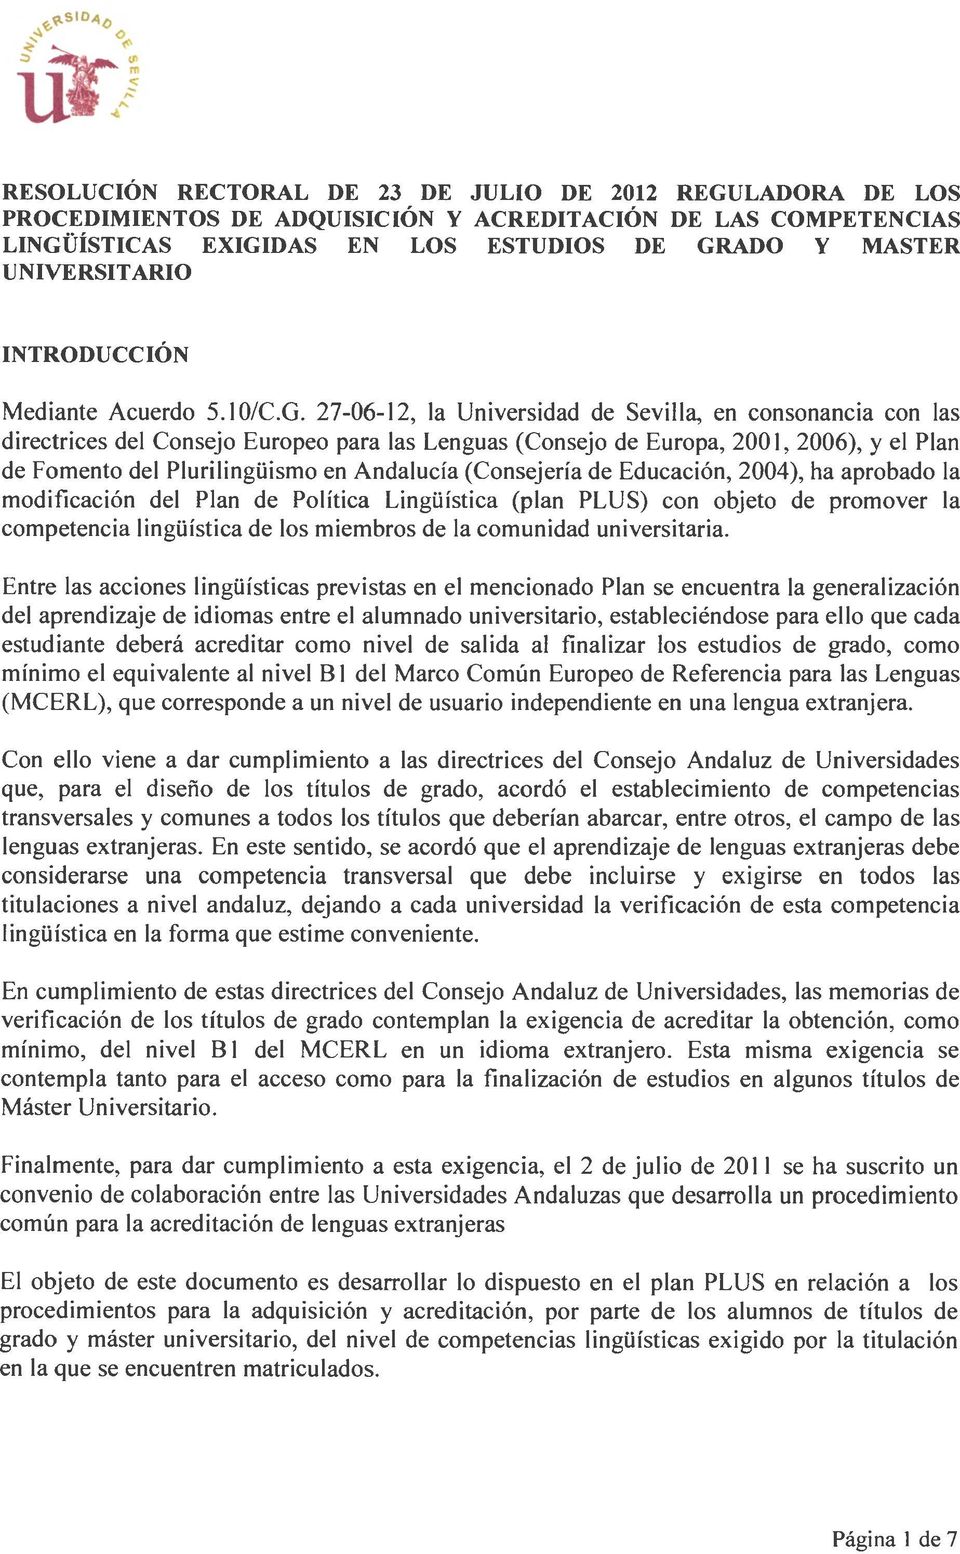 27-06-12, la Universidad de Sevilla, en consonancia con las directrices del Consejo Europeo para las Lenguas (Consejo de Europa, 2001, 2006), y el Plan de Fomento del Plurilingüismo en Andalucía